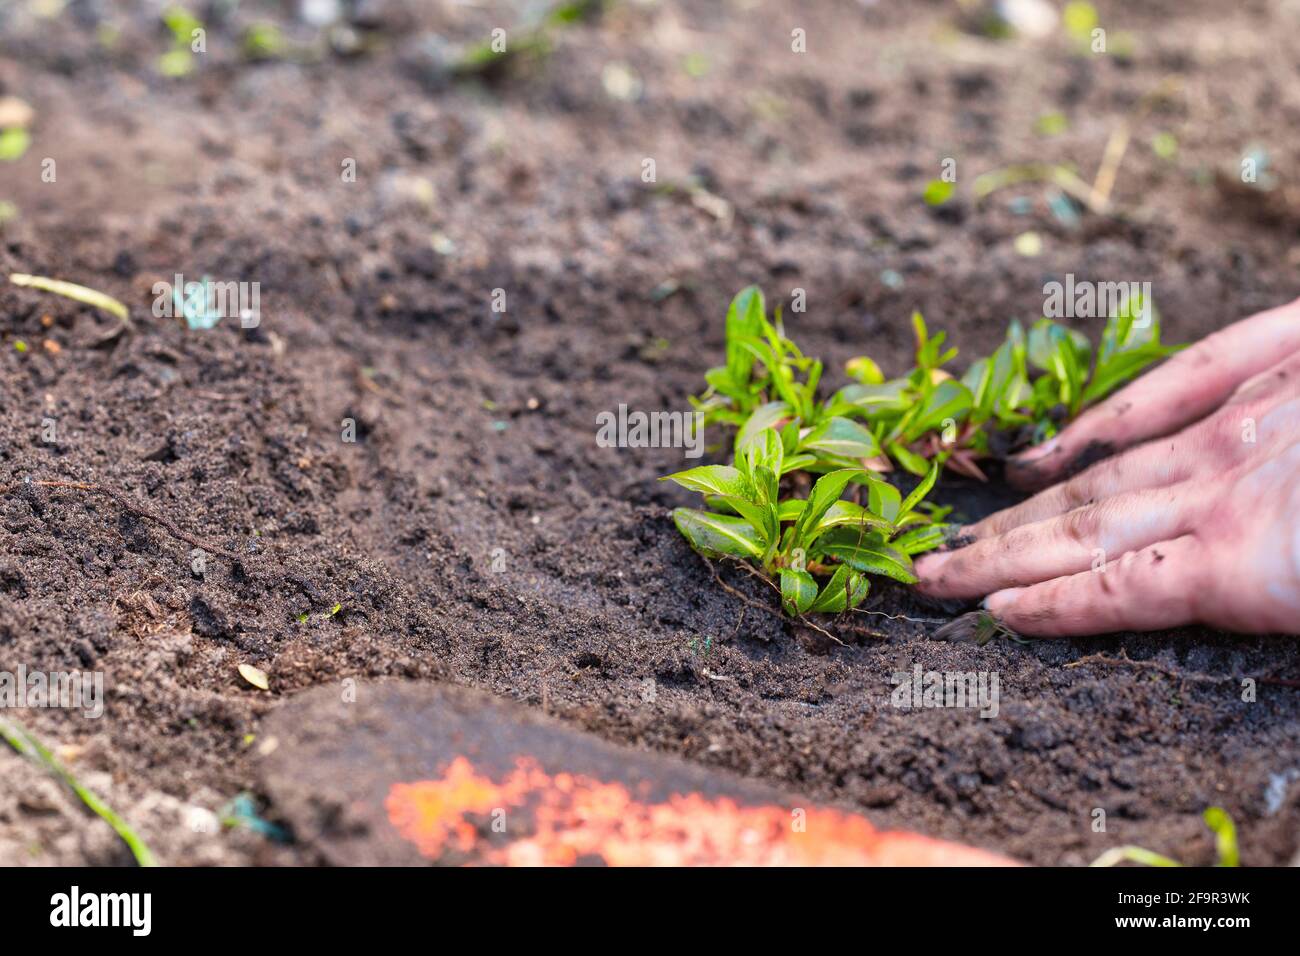 Zwei Mann Hände Pflanzen einen jungen Baum oder eine Pflanze während der Arbeit im Garten, Aussaat, Pflanzung und Anbau, Bauern Hände kümmern sich um neues Leben Stockfoto